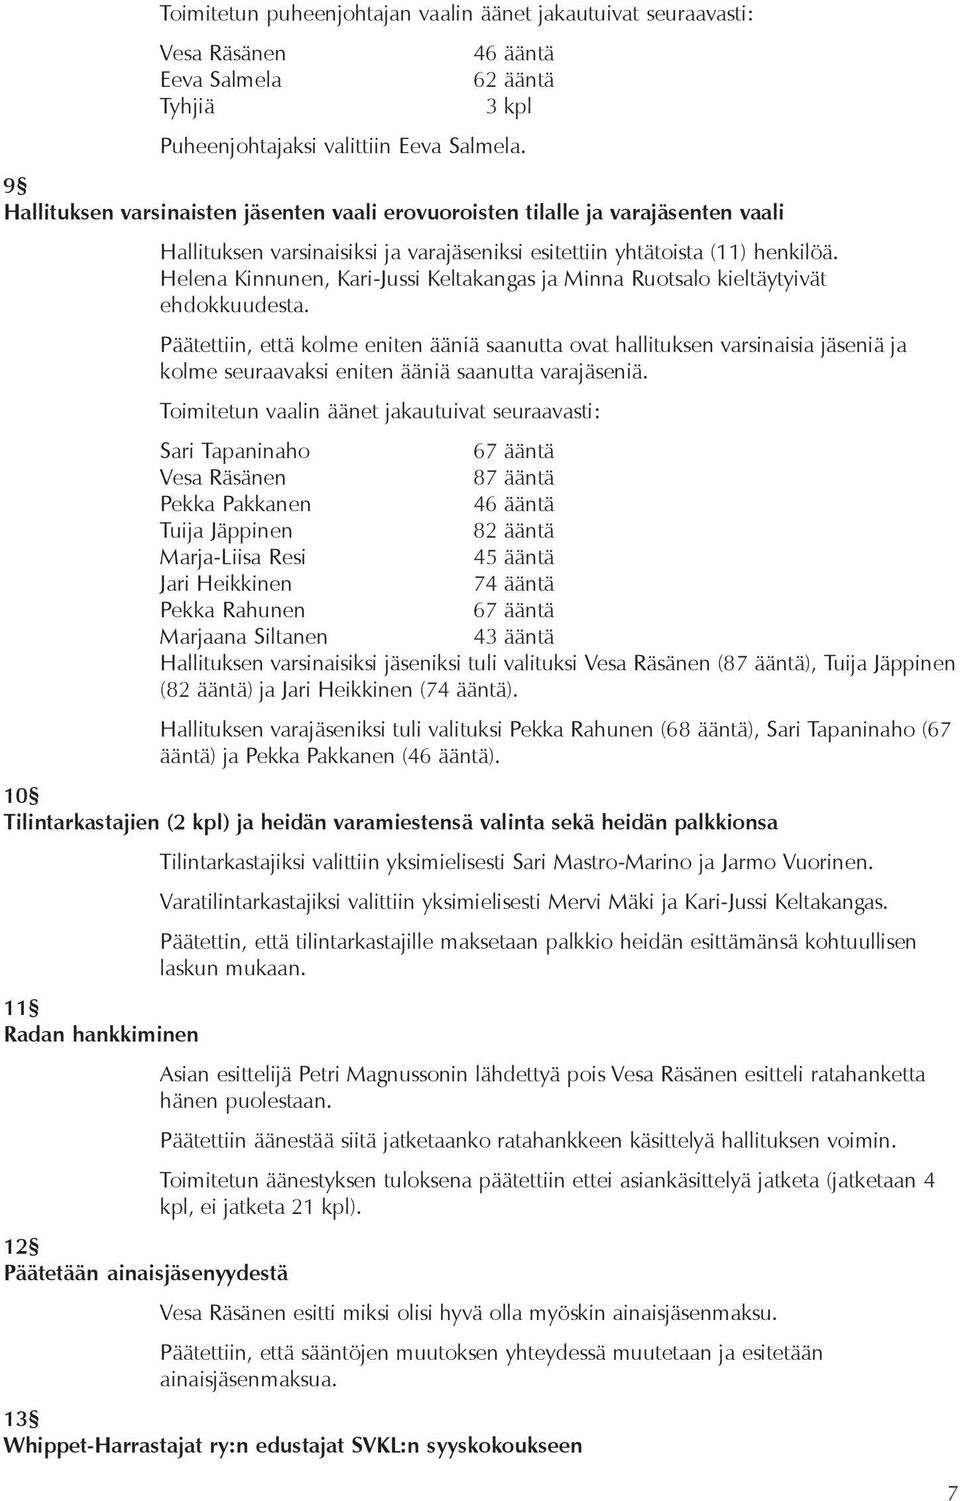 Helena Kinnunen, Kari-Jussi Keltakangas ja Minna Ruotsalo kieltäytyivät ehdokkuudesta.